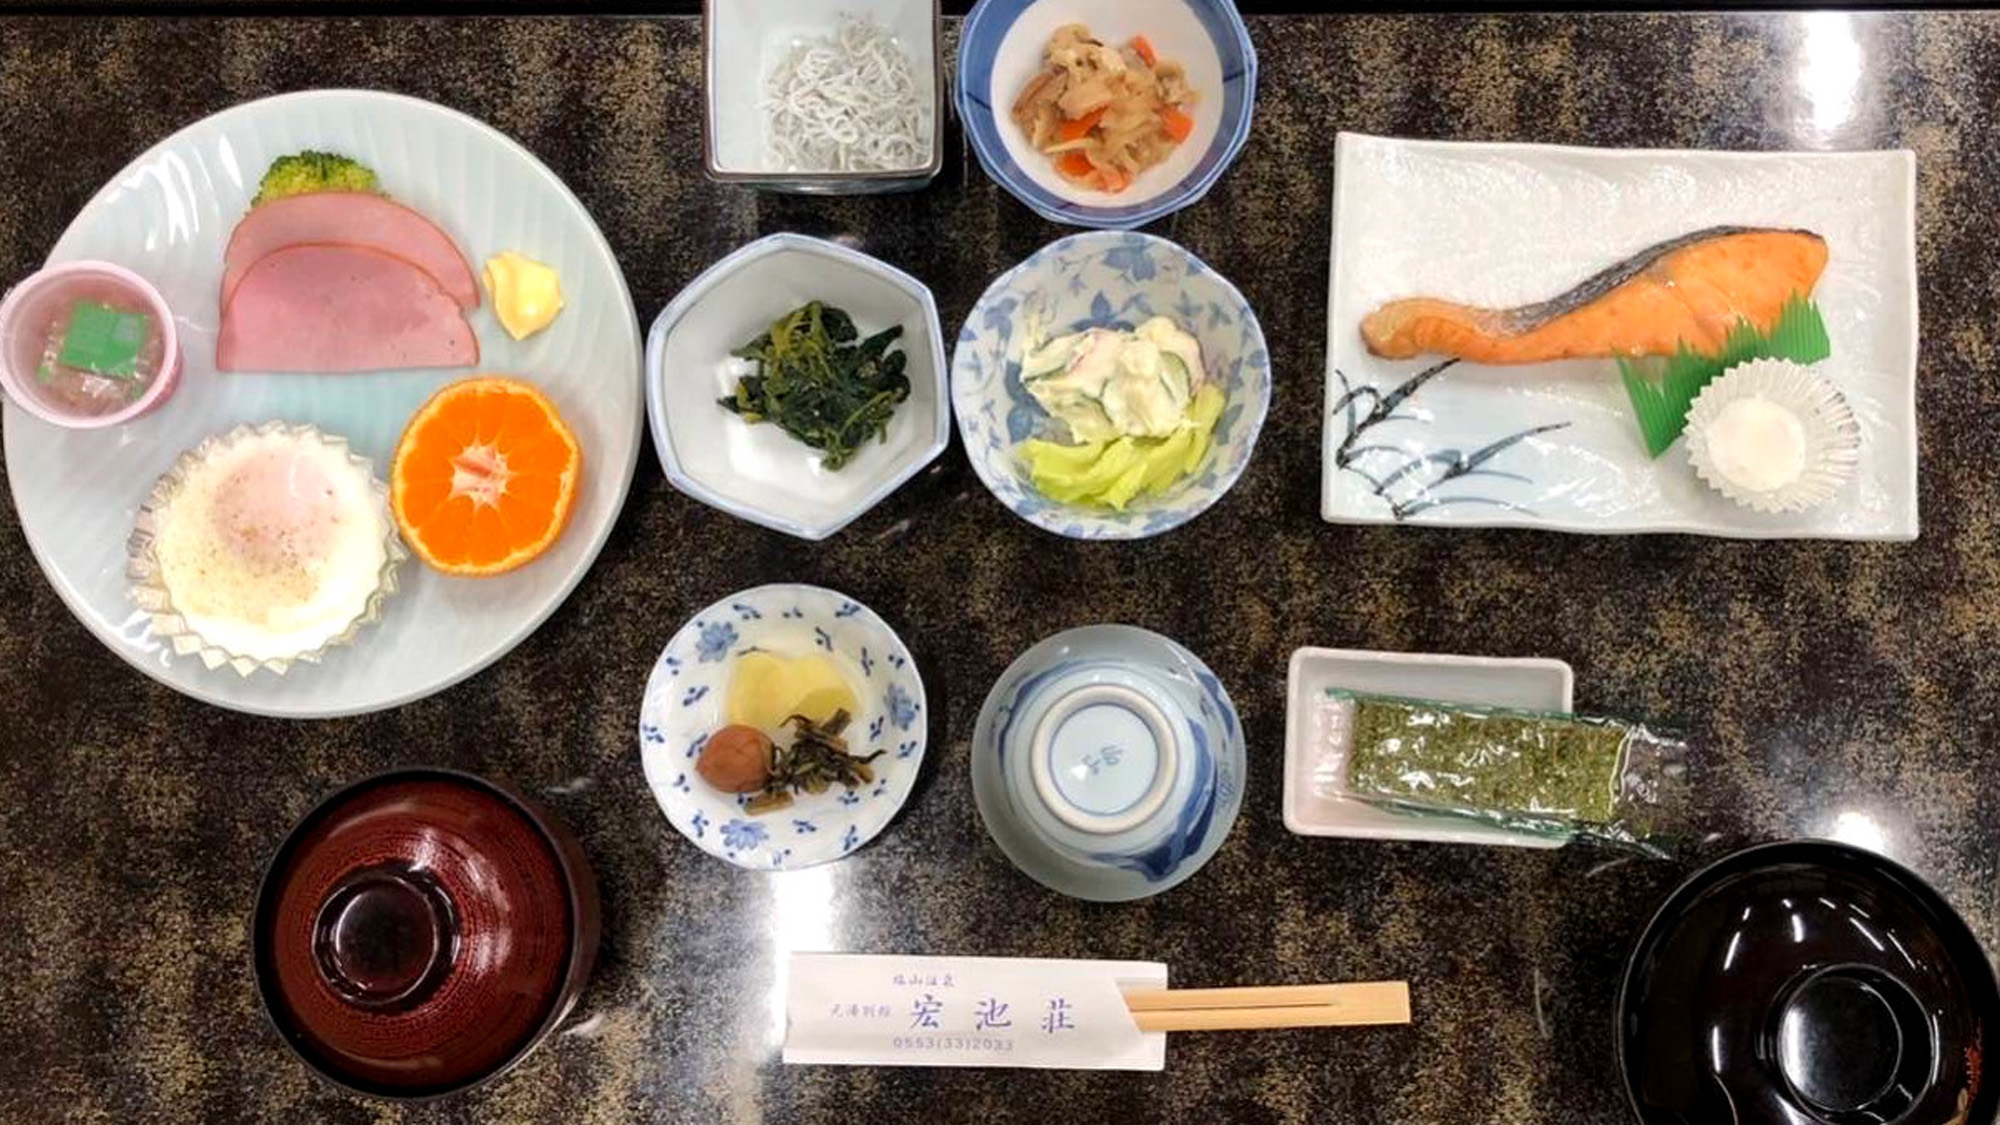 ※手作り朝食の一例☆和朝食です